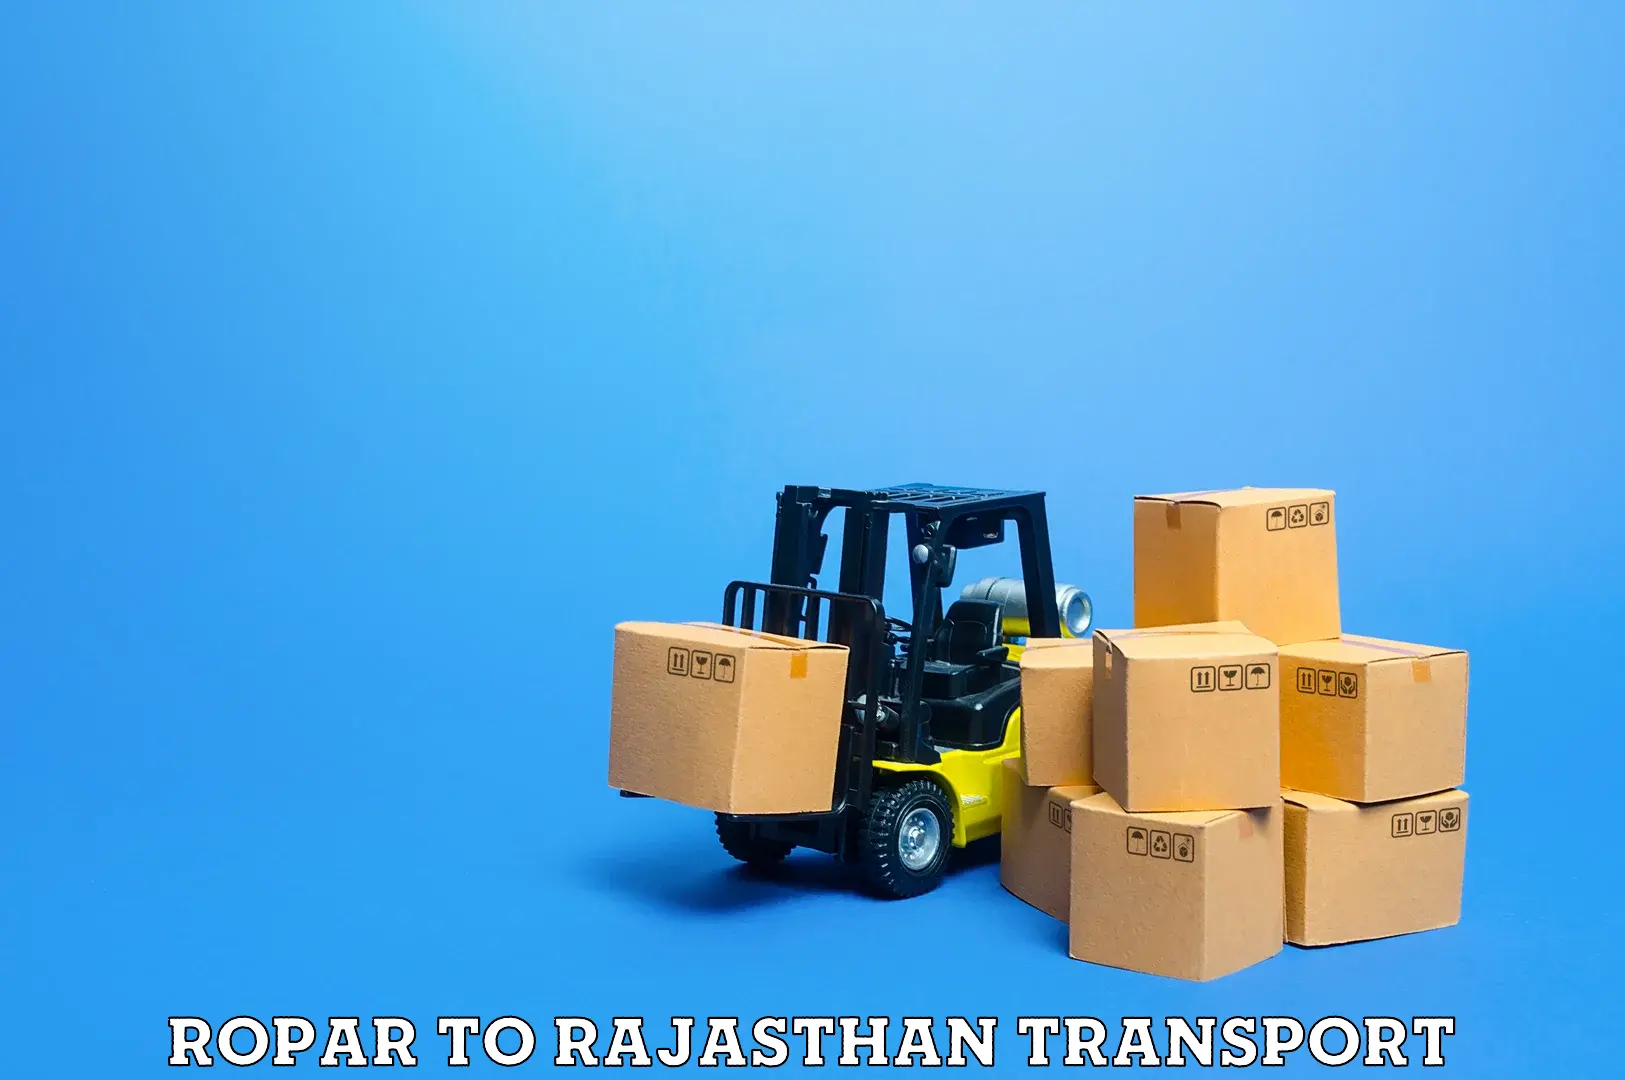 Parcel transport services Ropar to Bari Dholpur